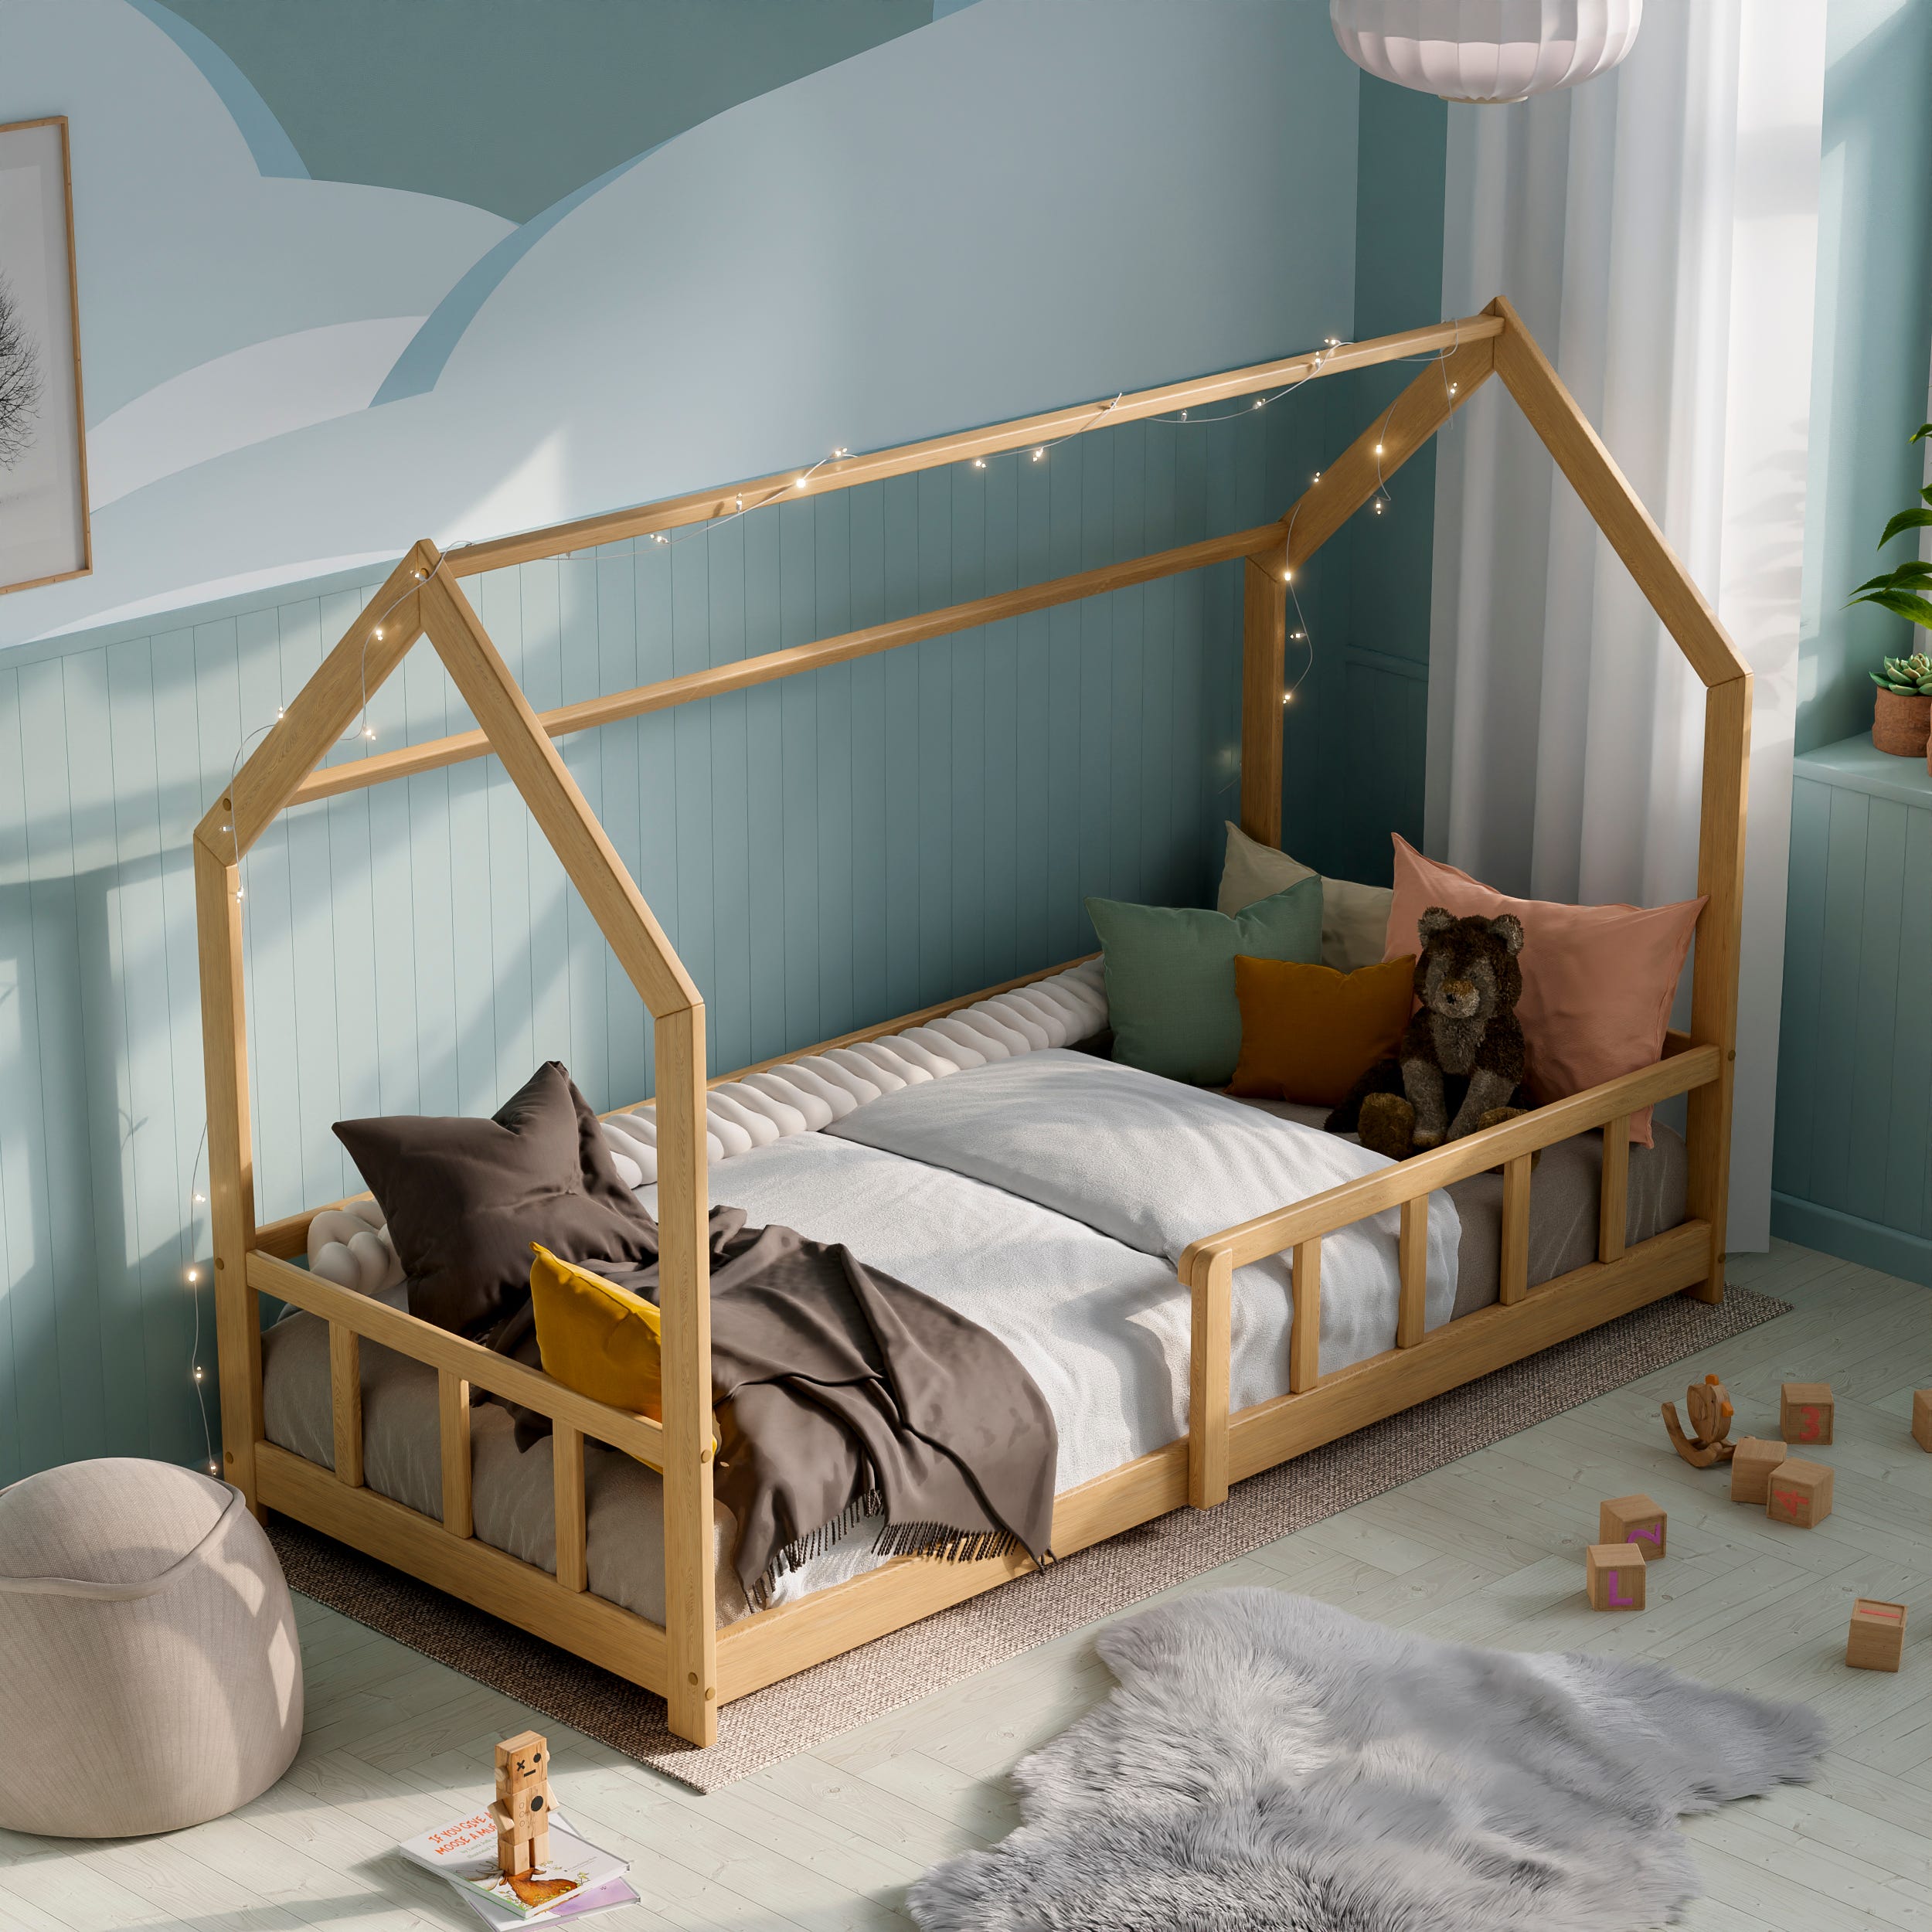 Encantadora habitación infantil con cama tipi 